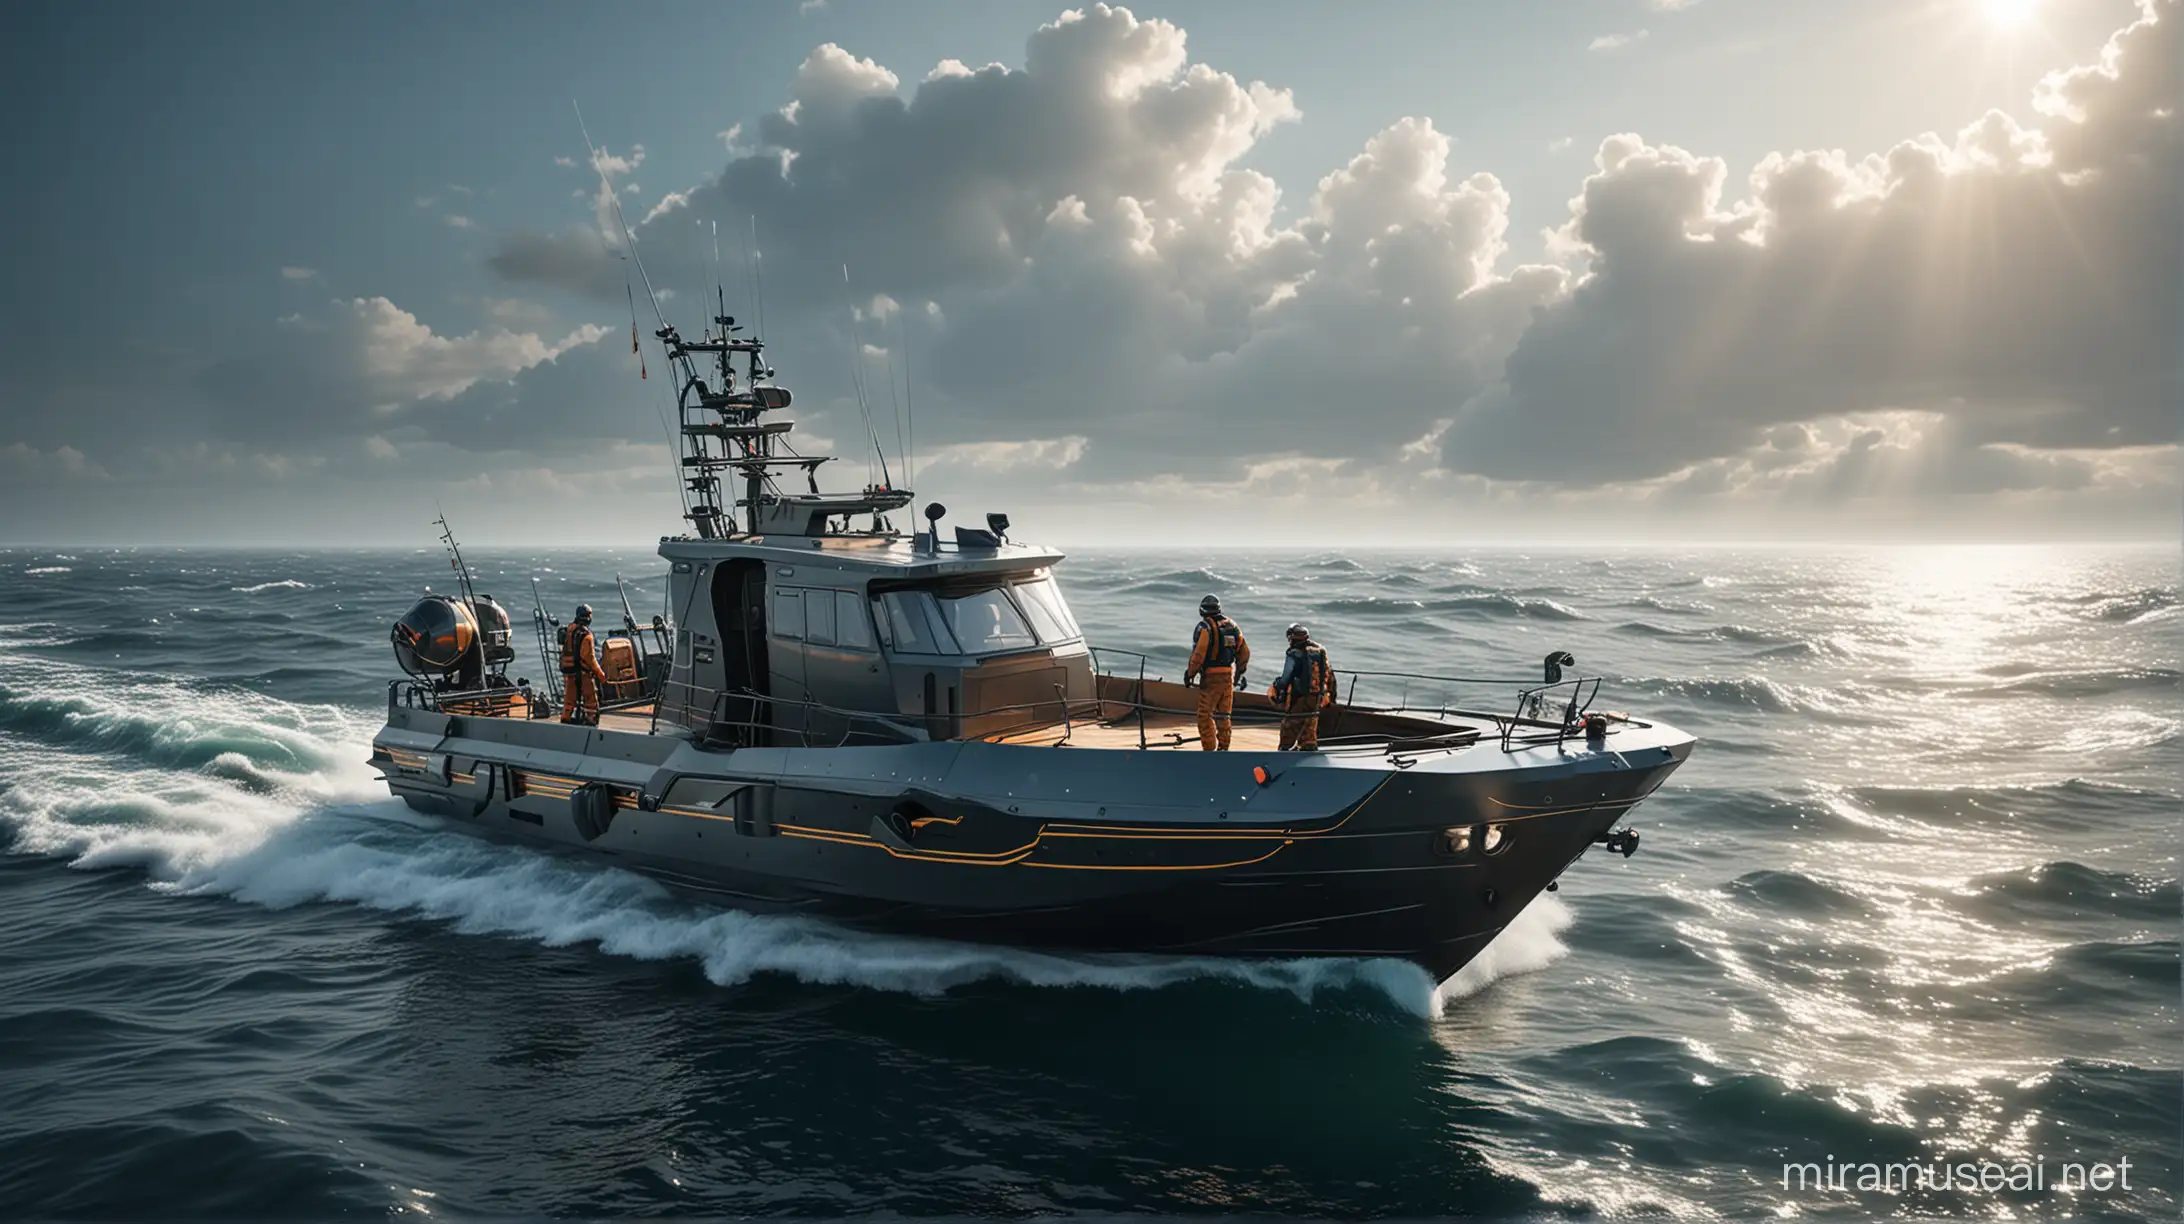 Premium Futuristic Fisherman Boat with Equipment in Detailed Sea Scene